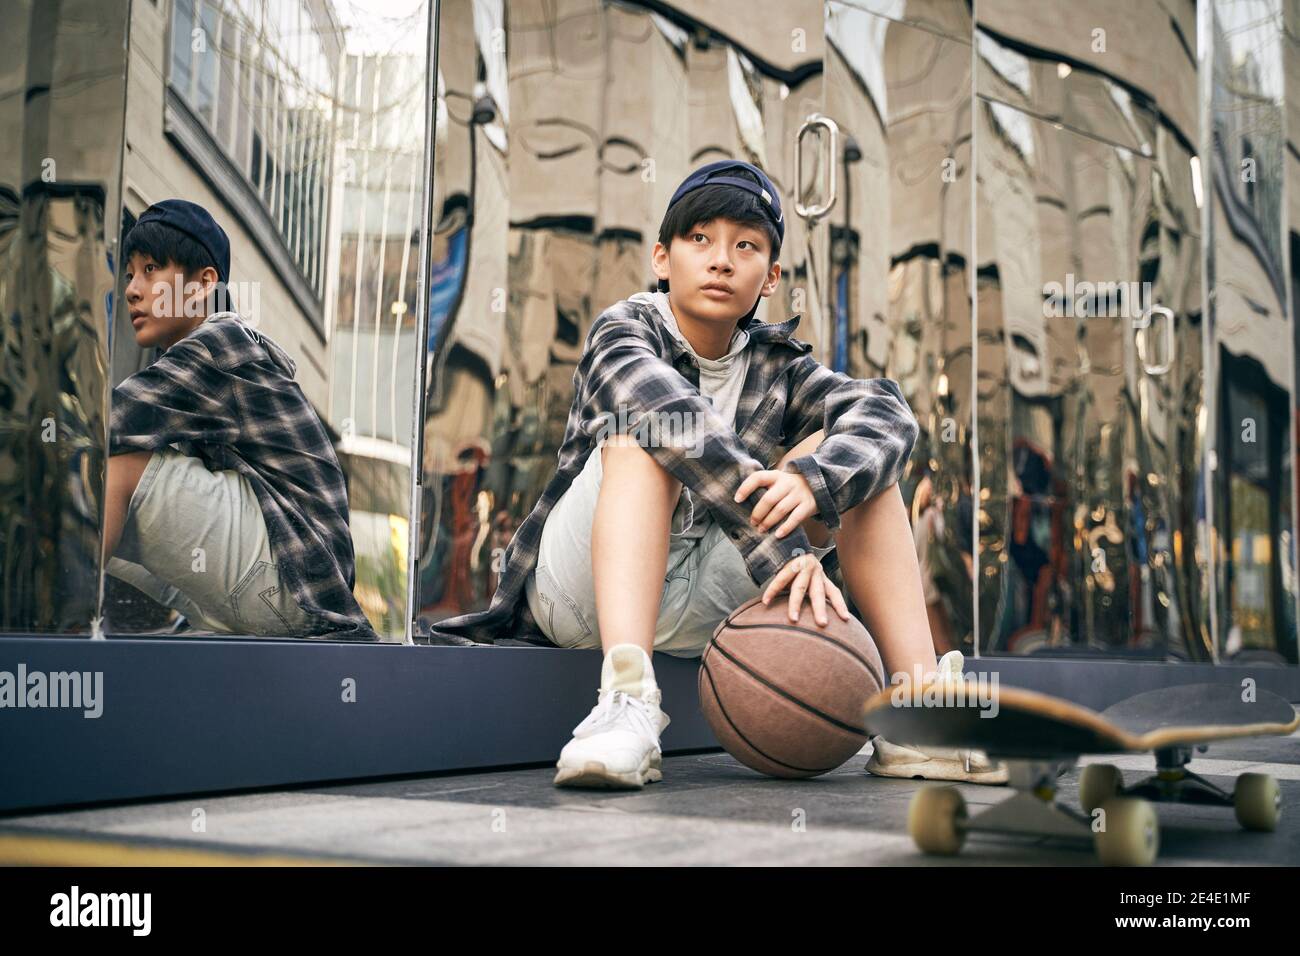 adolescent asiatique prenant une pause assis sur le sol avec basket-ball et skateboard Banque D'Images